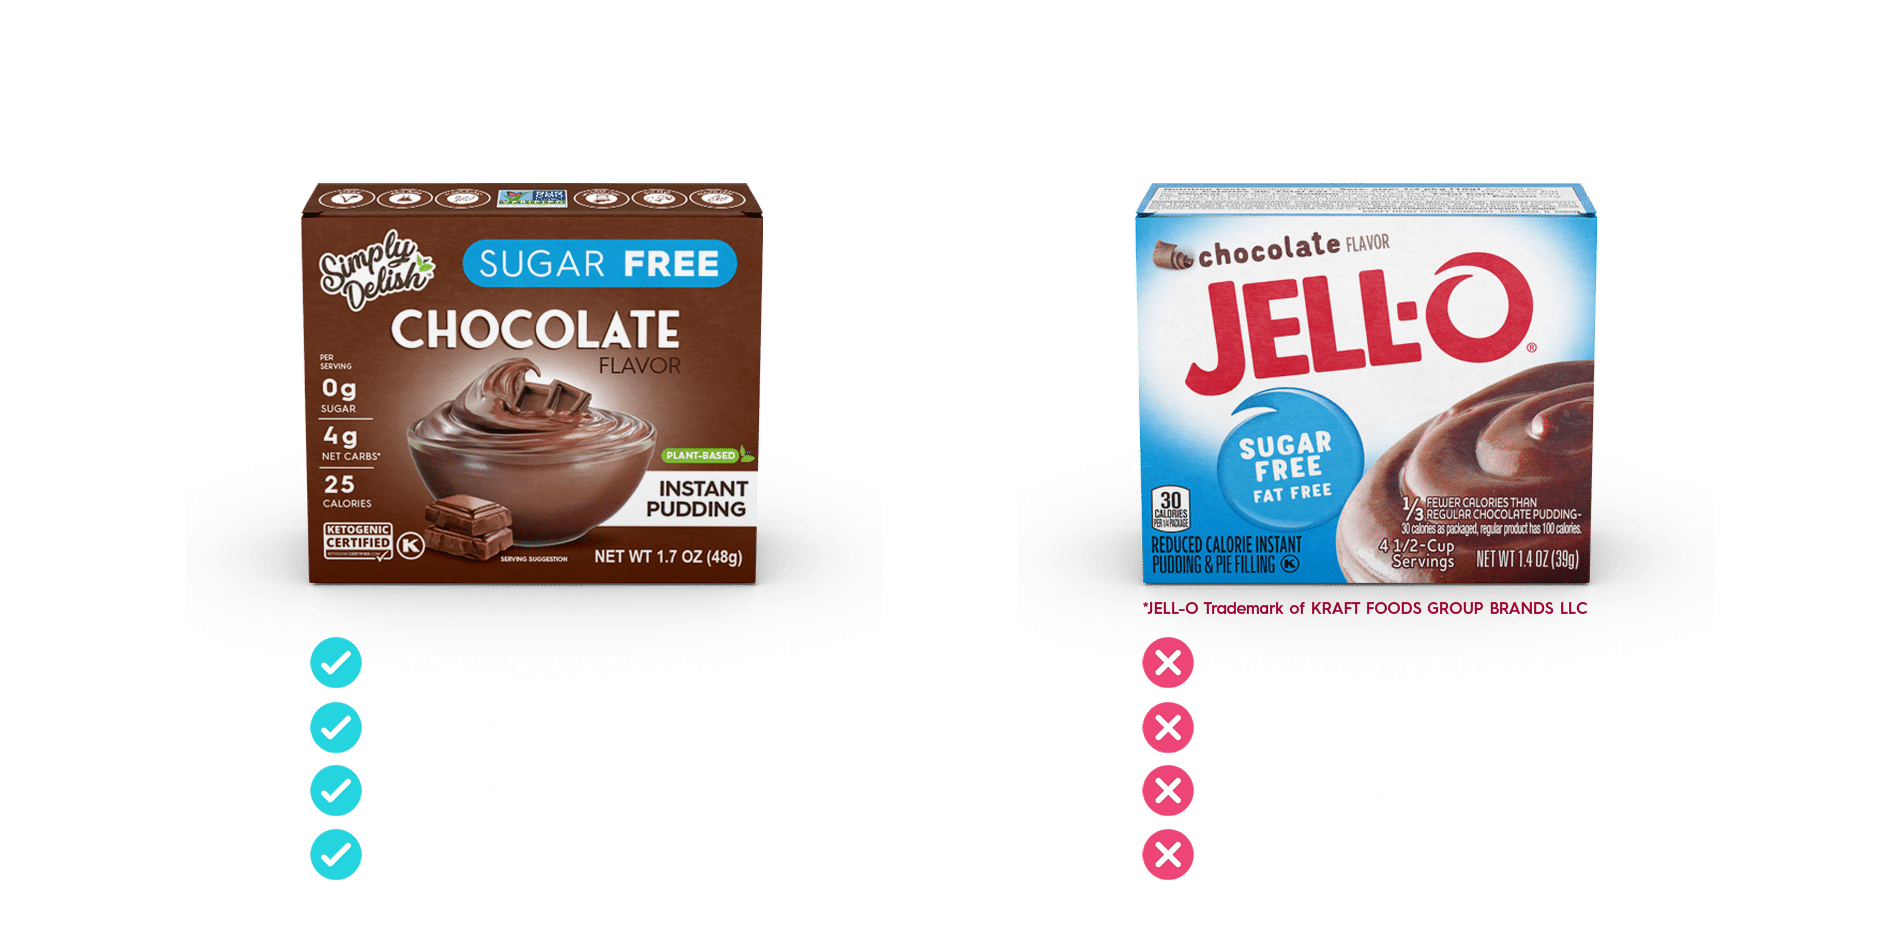 Keto Puddings - Simply Delish vs Jello